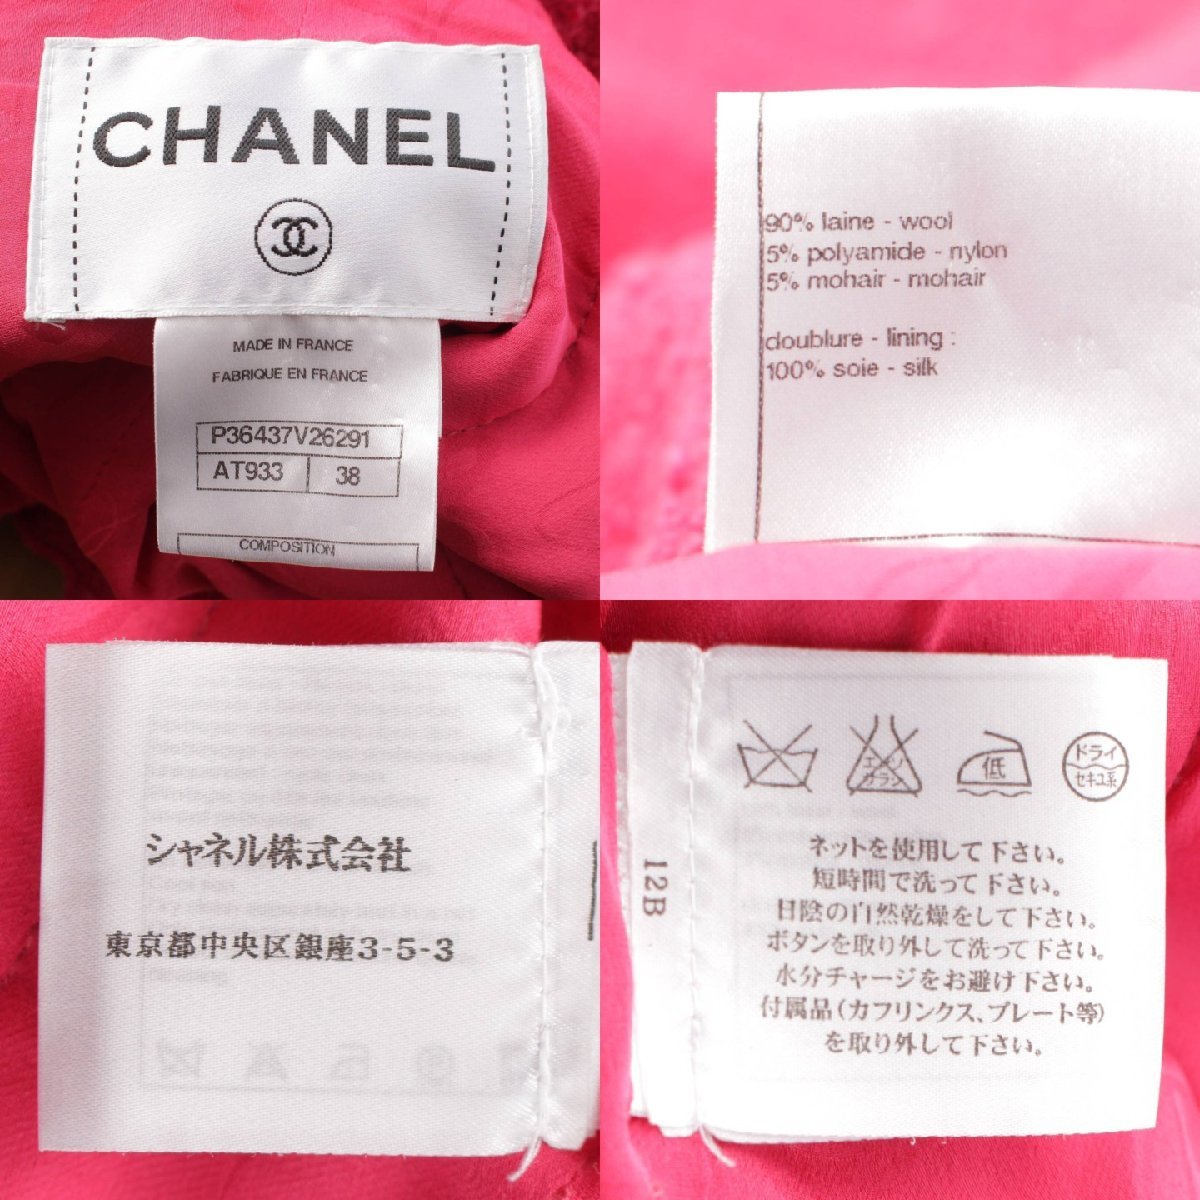 [ Chanel ]Chanel черепаха задний твид no color жакет & юбка выставить розовый 38 [ б/у ][ стандартный товар гарантия ]197755